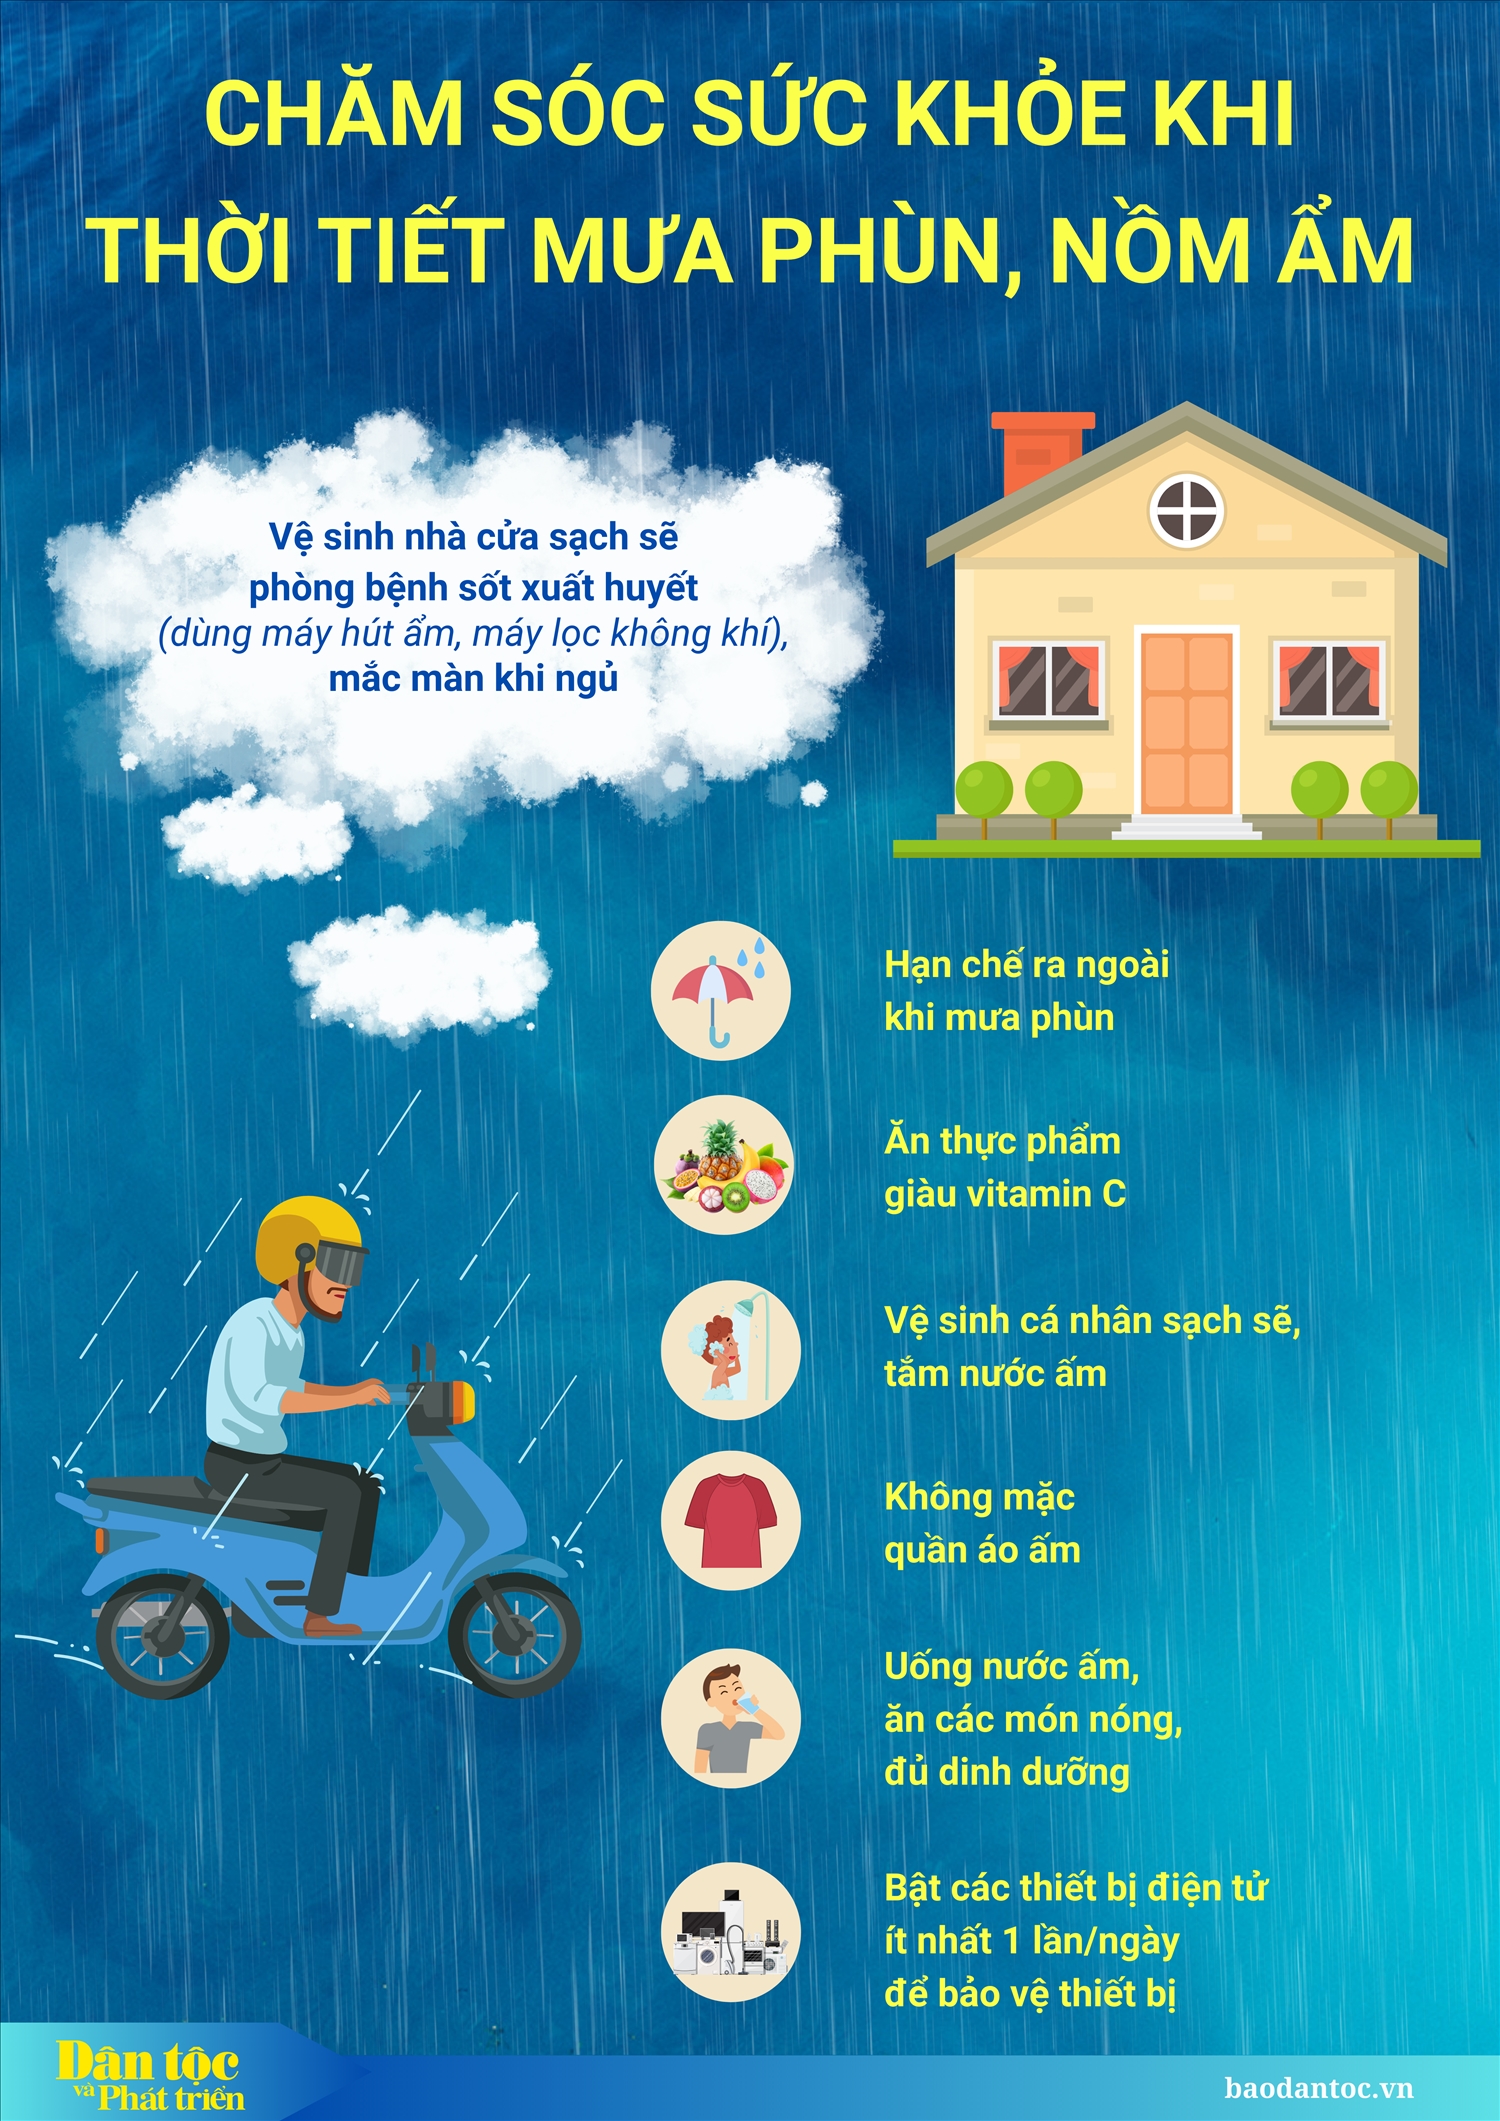 (Inforfraphic) Chăm sóc sức khỏe khi thời tiết nồm ẩm